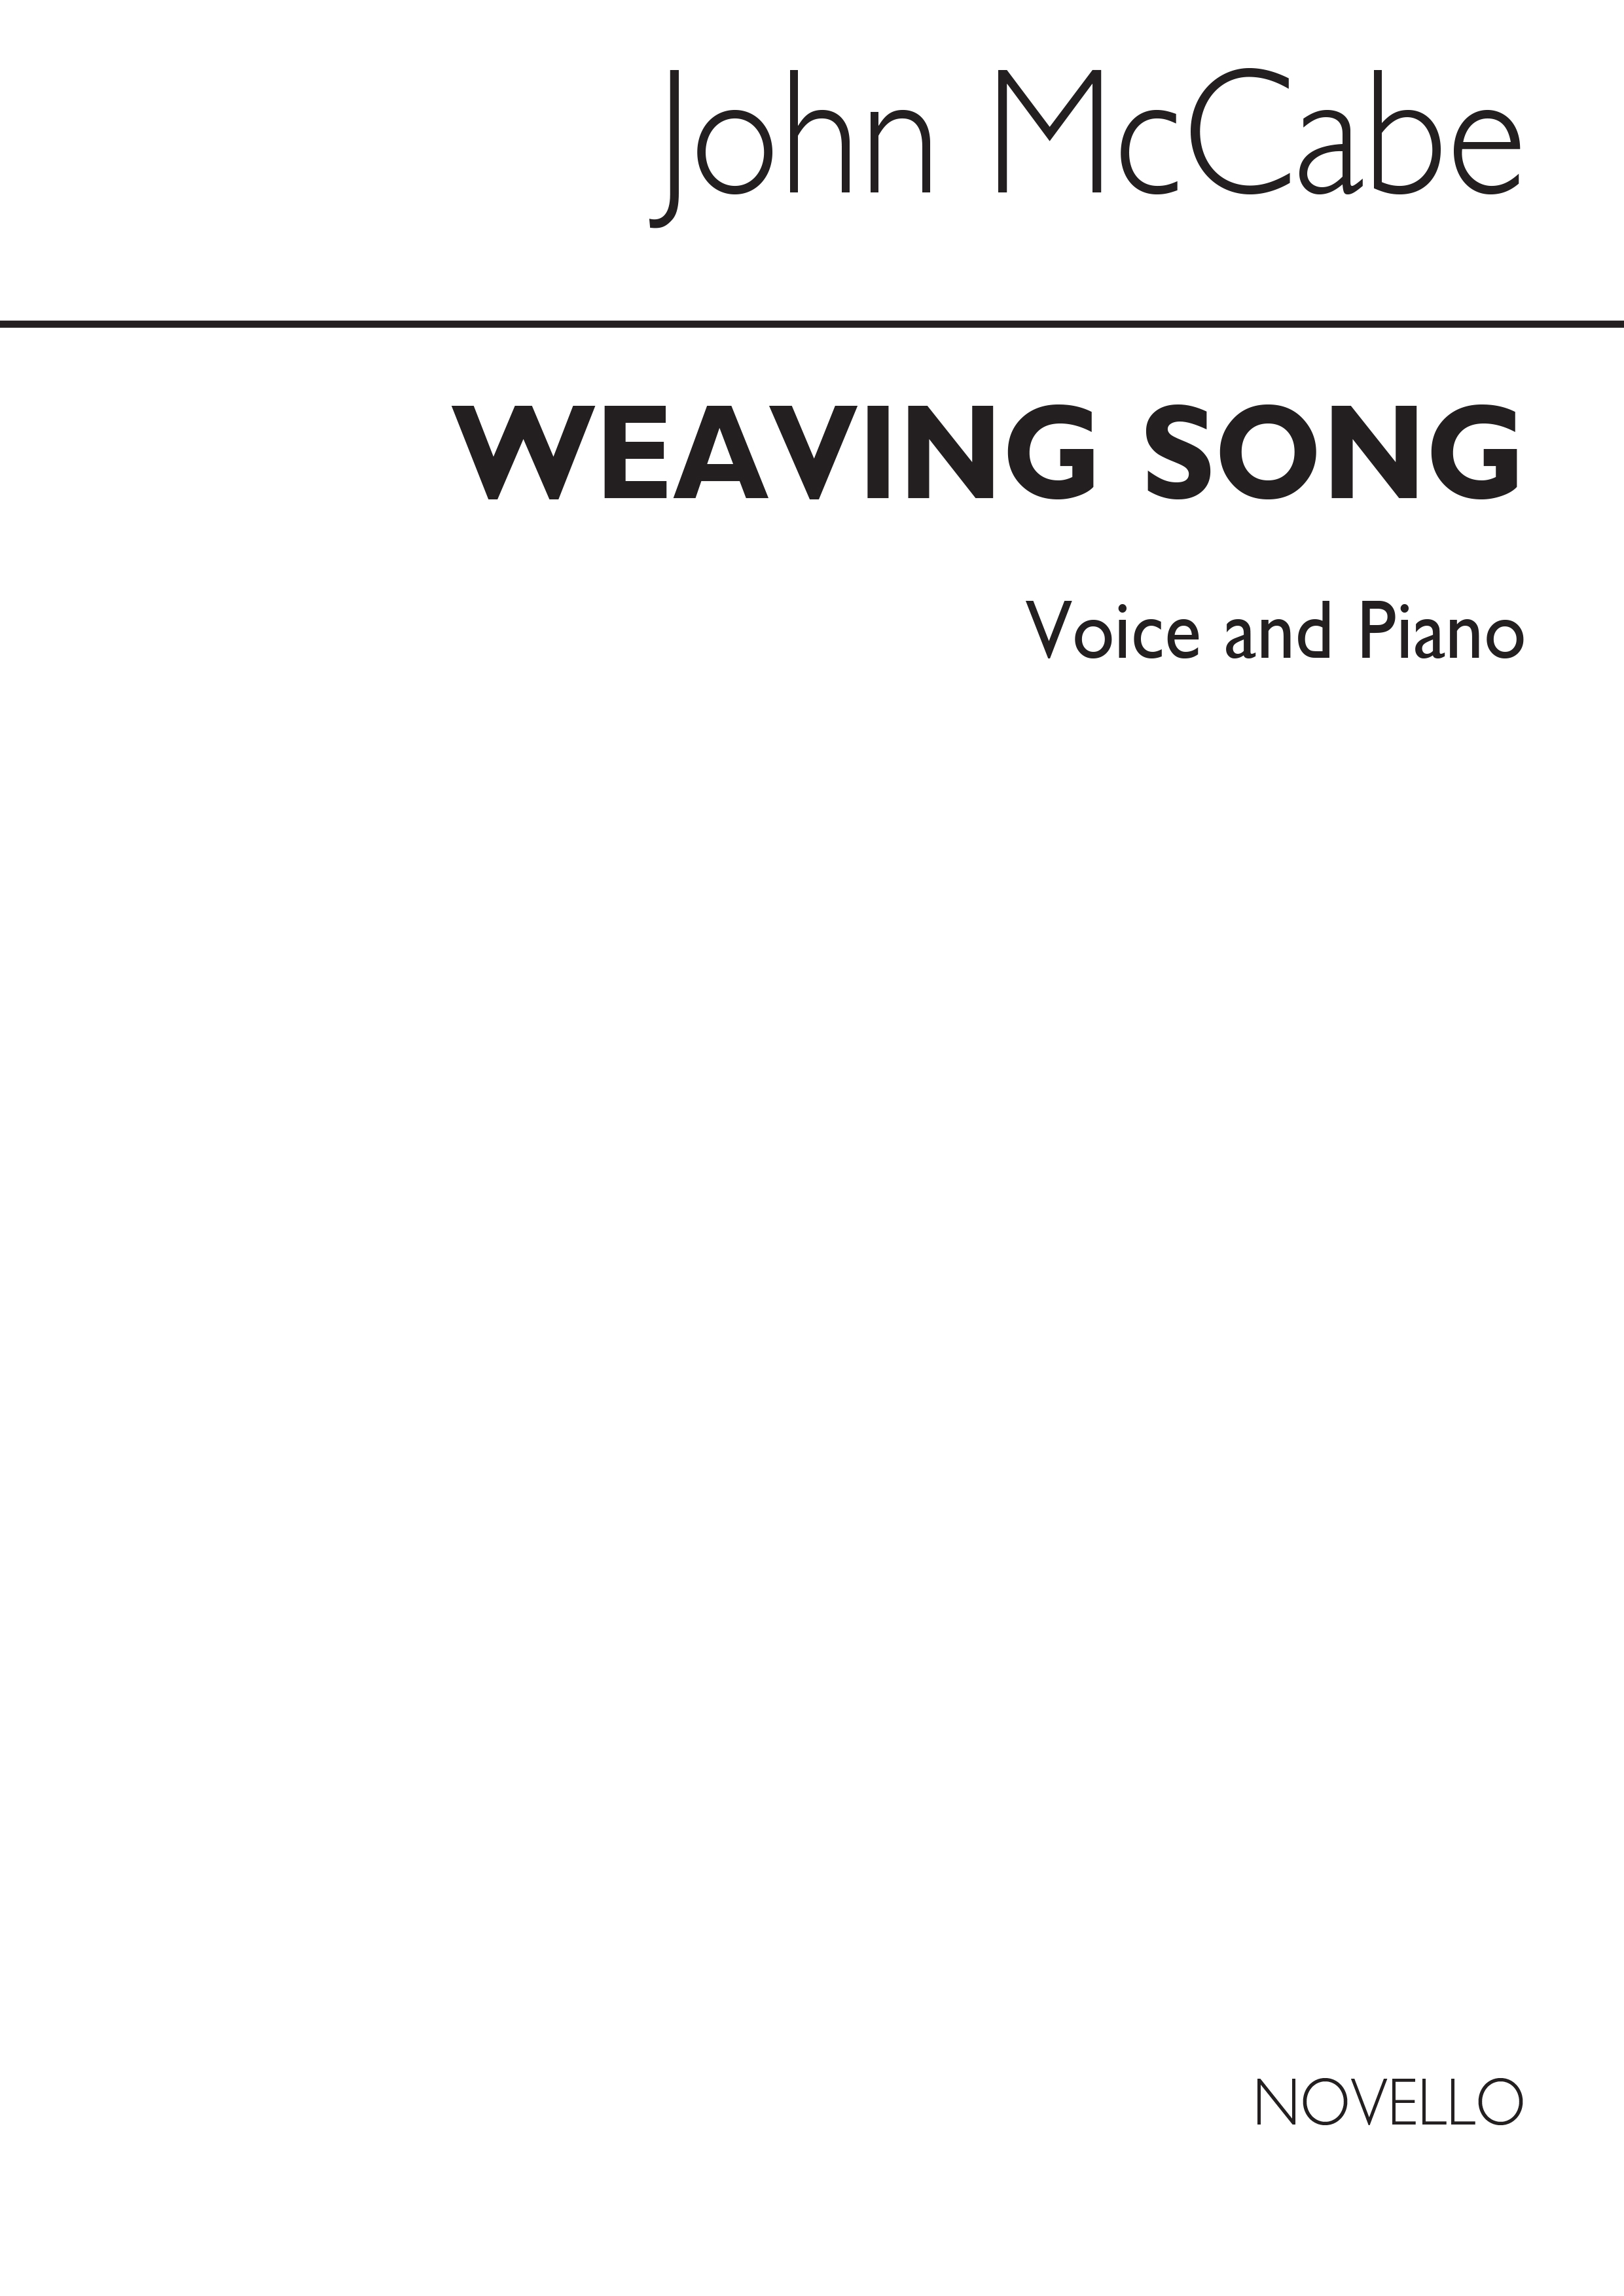 John McCabe: Weaving Song Voice/Piano